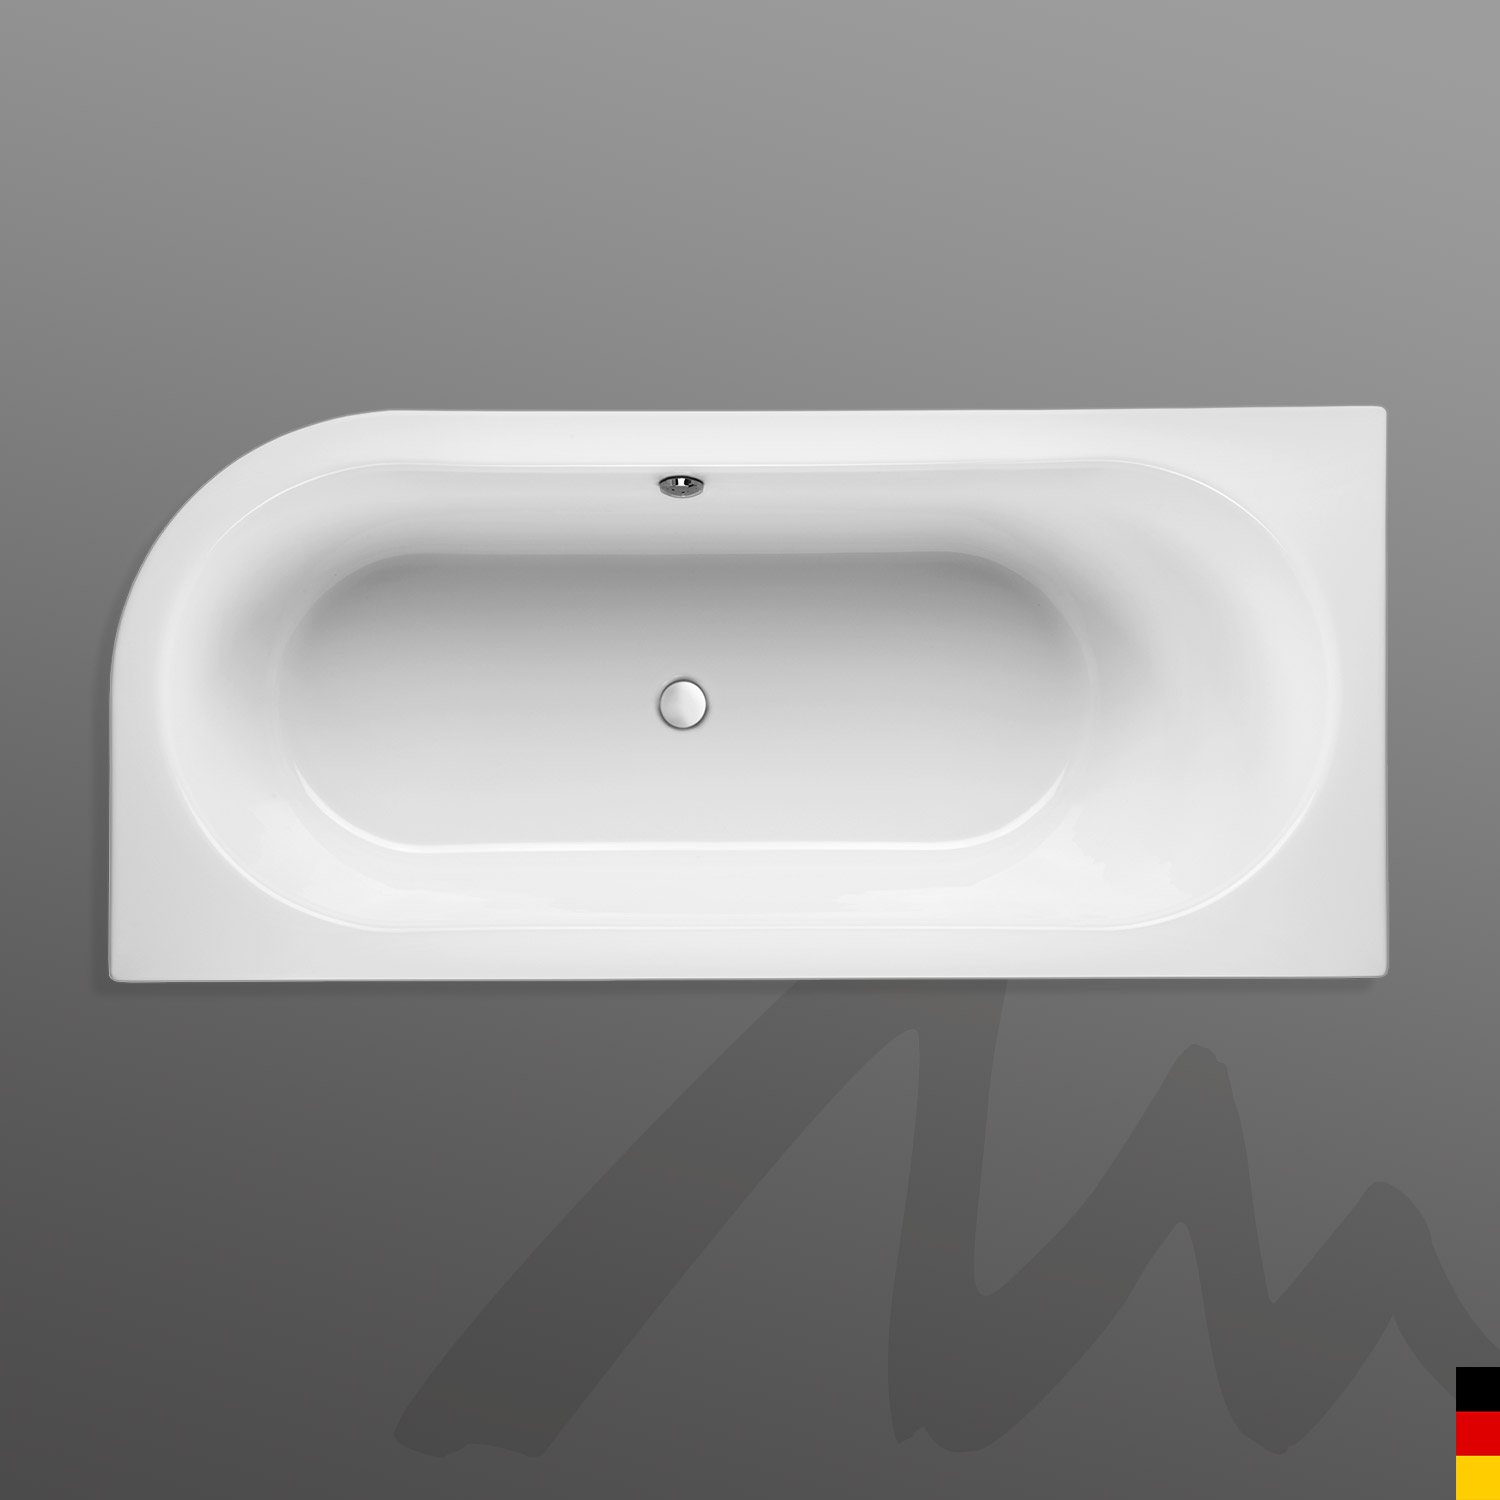 Mauersberger Badewanne Oval Primo 1 - 170/75 uno Ausführung links  170x75x44  Farbe:weiß